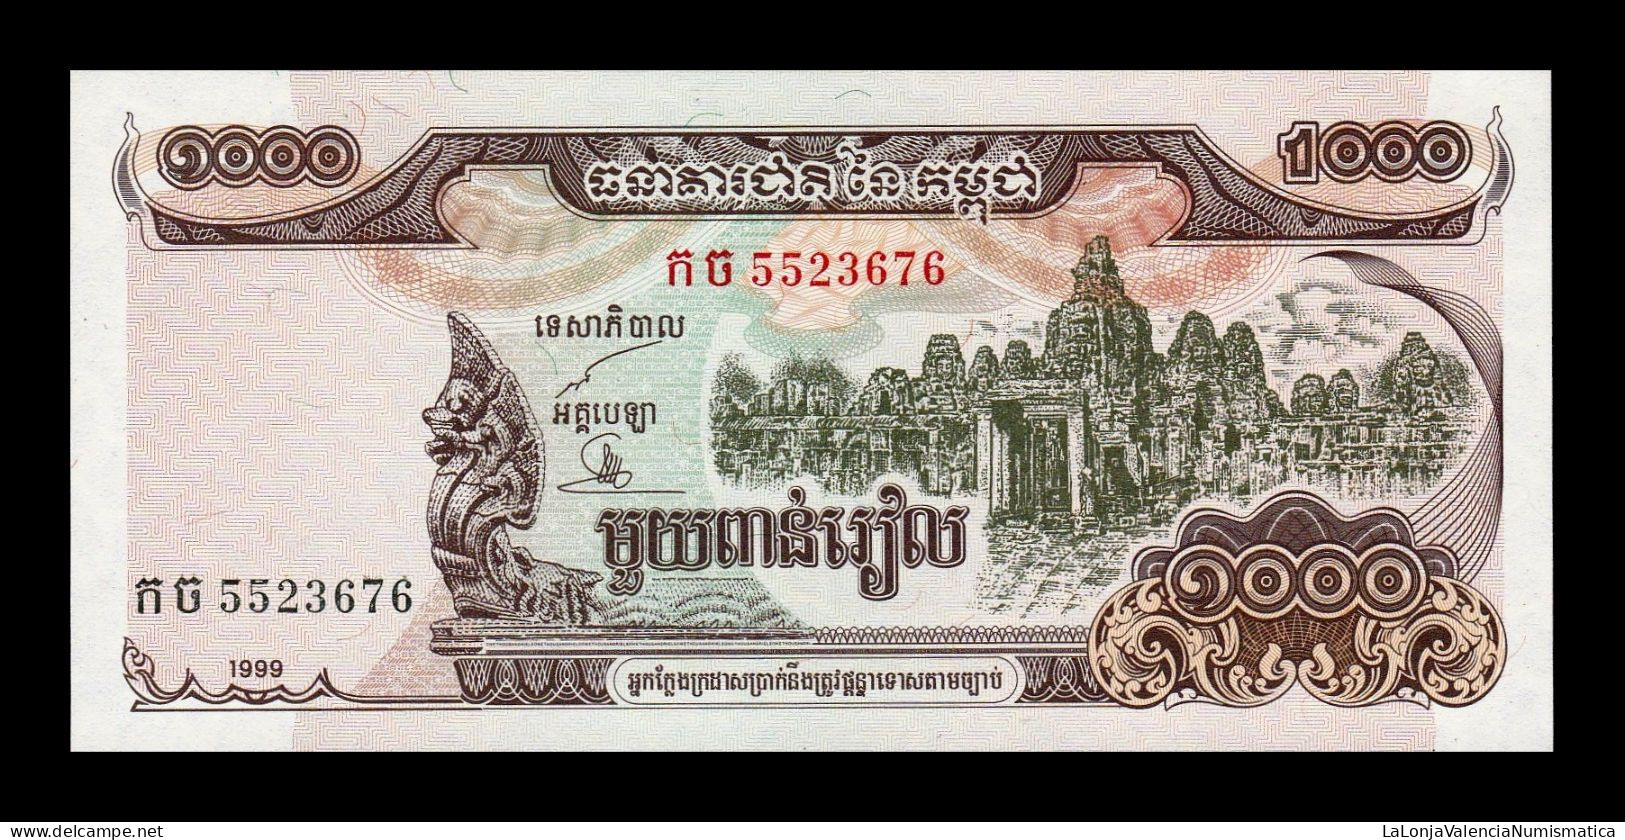 Camboya Cambodia 1000 Riels 1999 Pick 51 Sc Unc - Cambogia